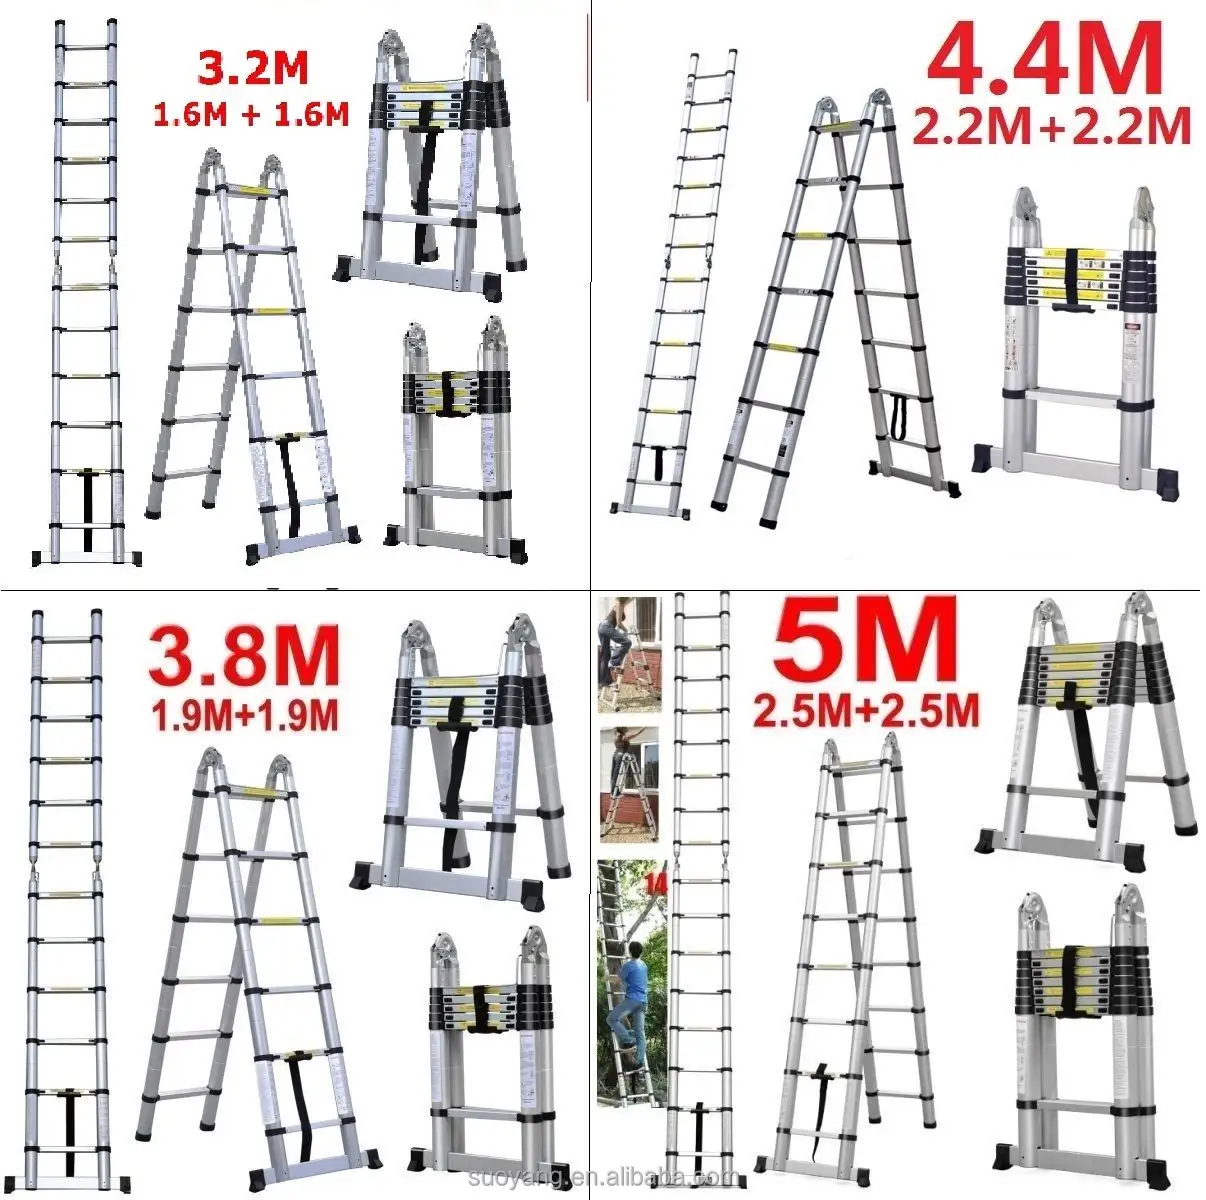 Escada telescópica de alumínio tipo a, 3.8m, escada dupla, EN131-6, único, reta, escada domésticas, en1600 gs 380*48*9cm